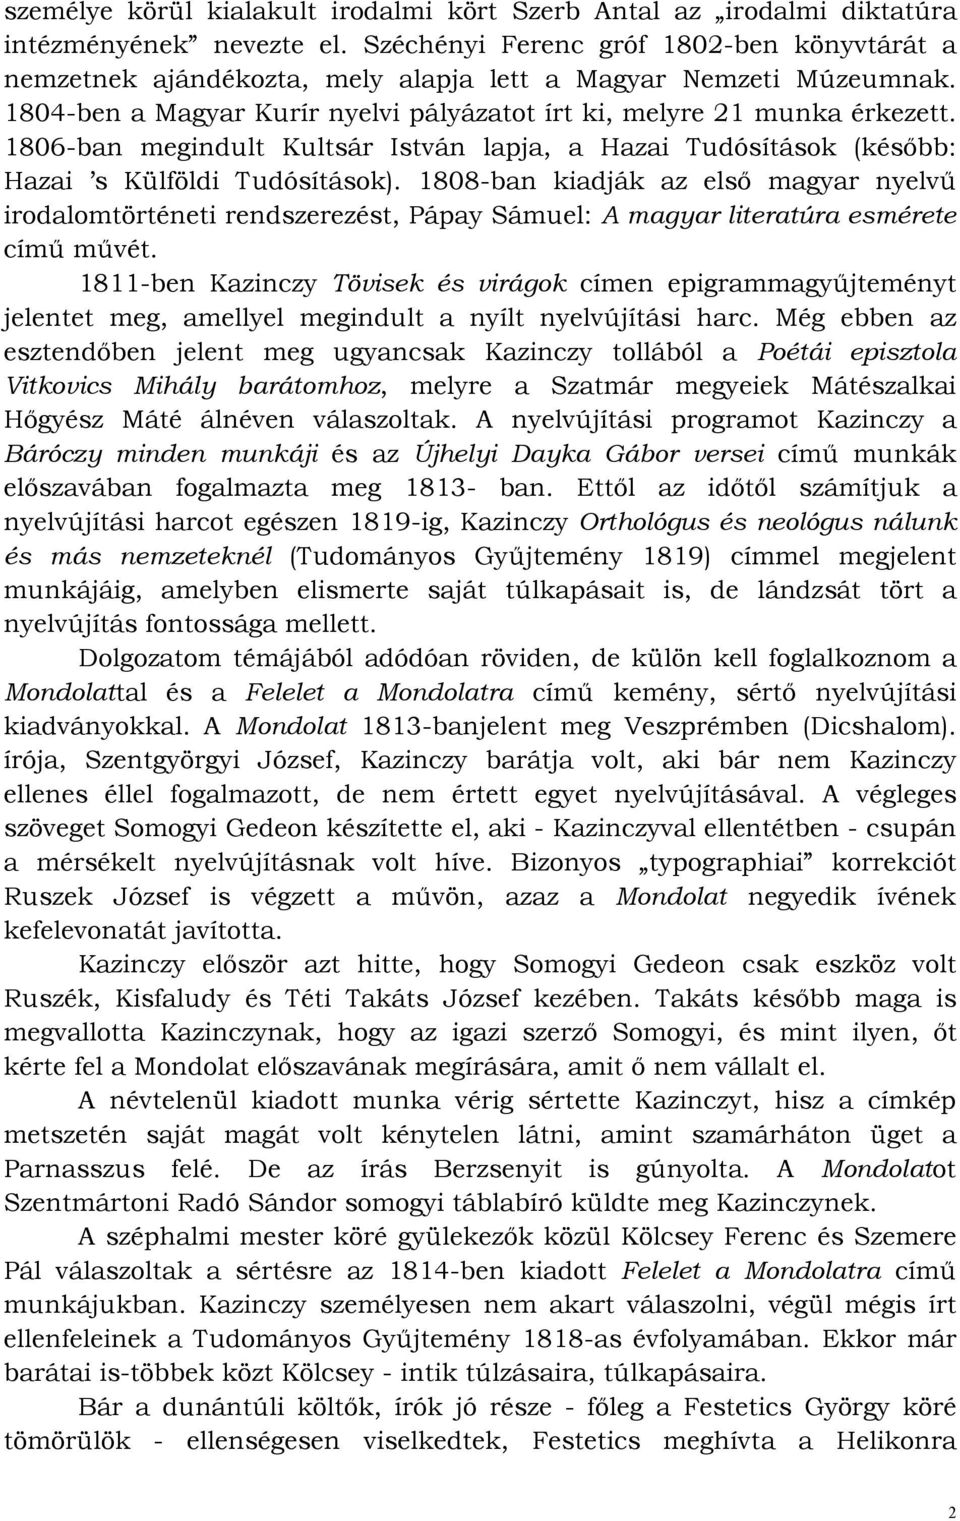 1806-ban megindult Kultsár István lapja, a Hazai Tudósítások (késıbb: Hazai s Külföldi Tudósítások).